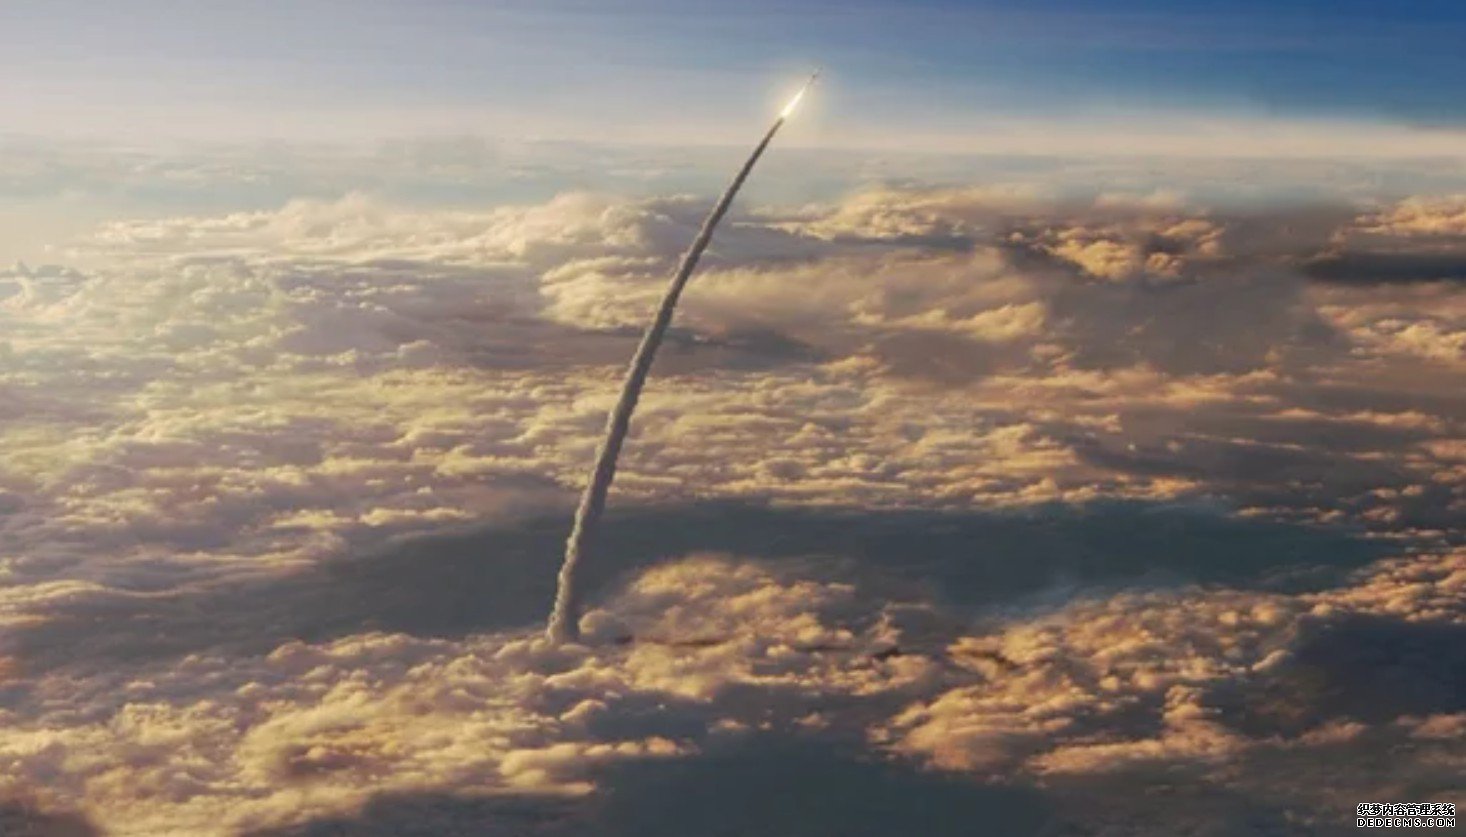 杏耀美国国家航空和宇宙航行局(NASA)宣布将进行有史以来最强大的火箭科学实验